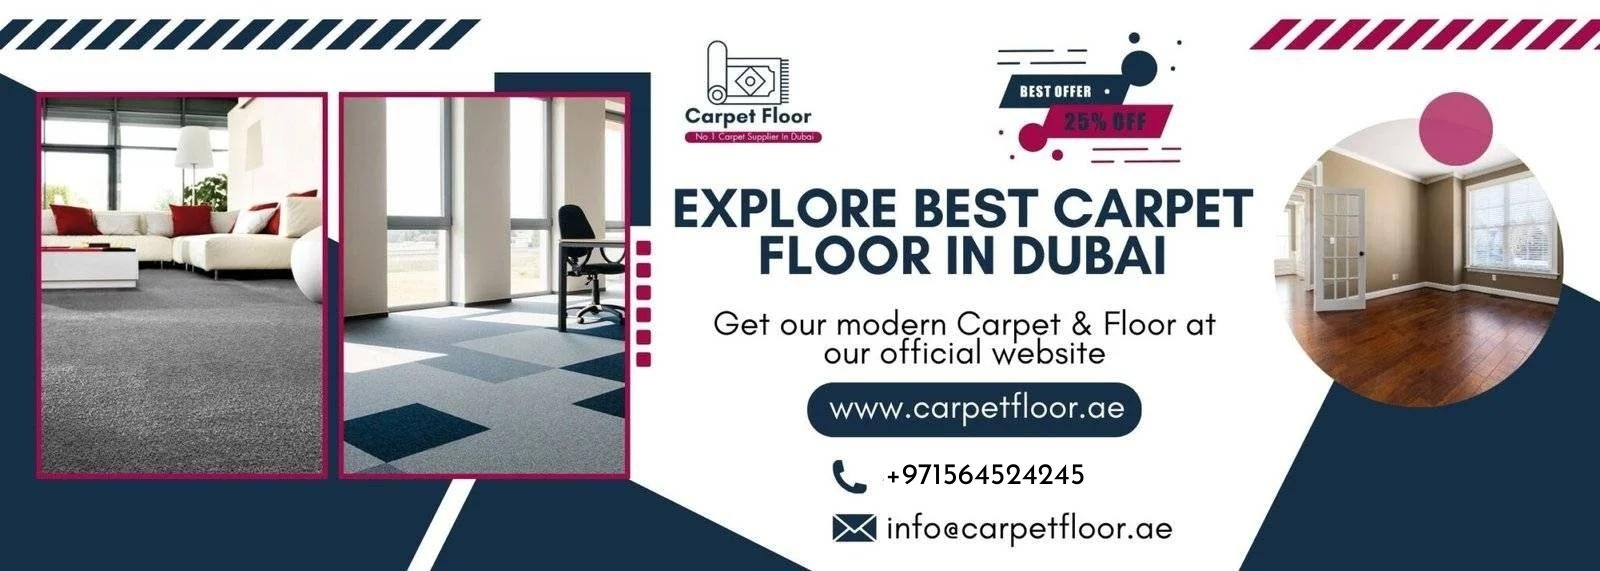 carpet floor in dubai